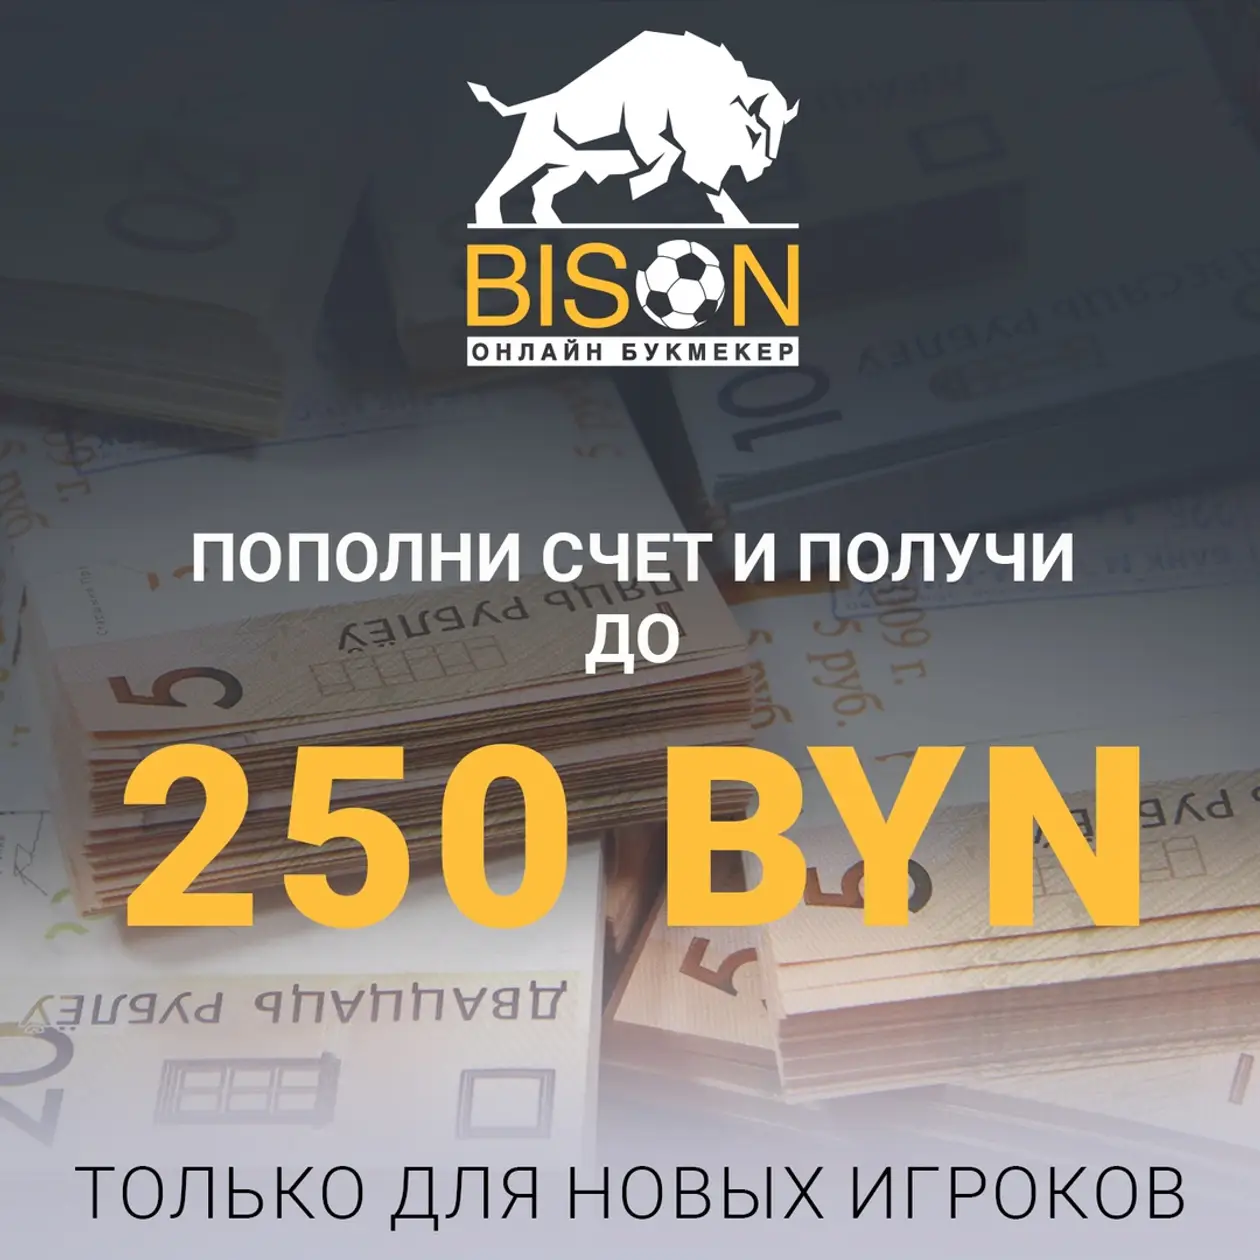 «Бизон» дарит до 250 рублей всем новым игрокам. Нужно только пополнить счет